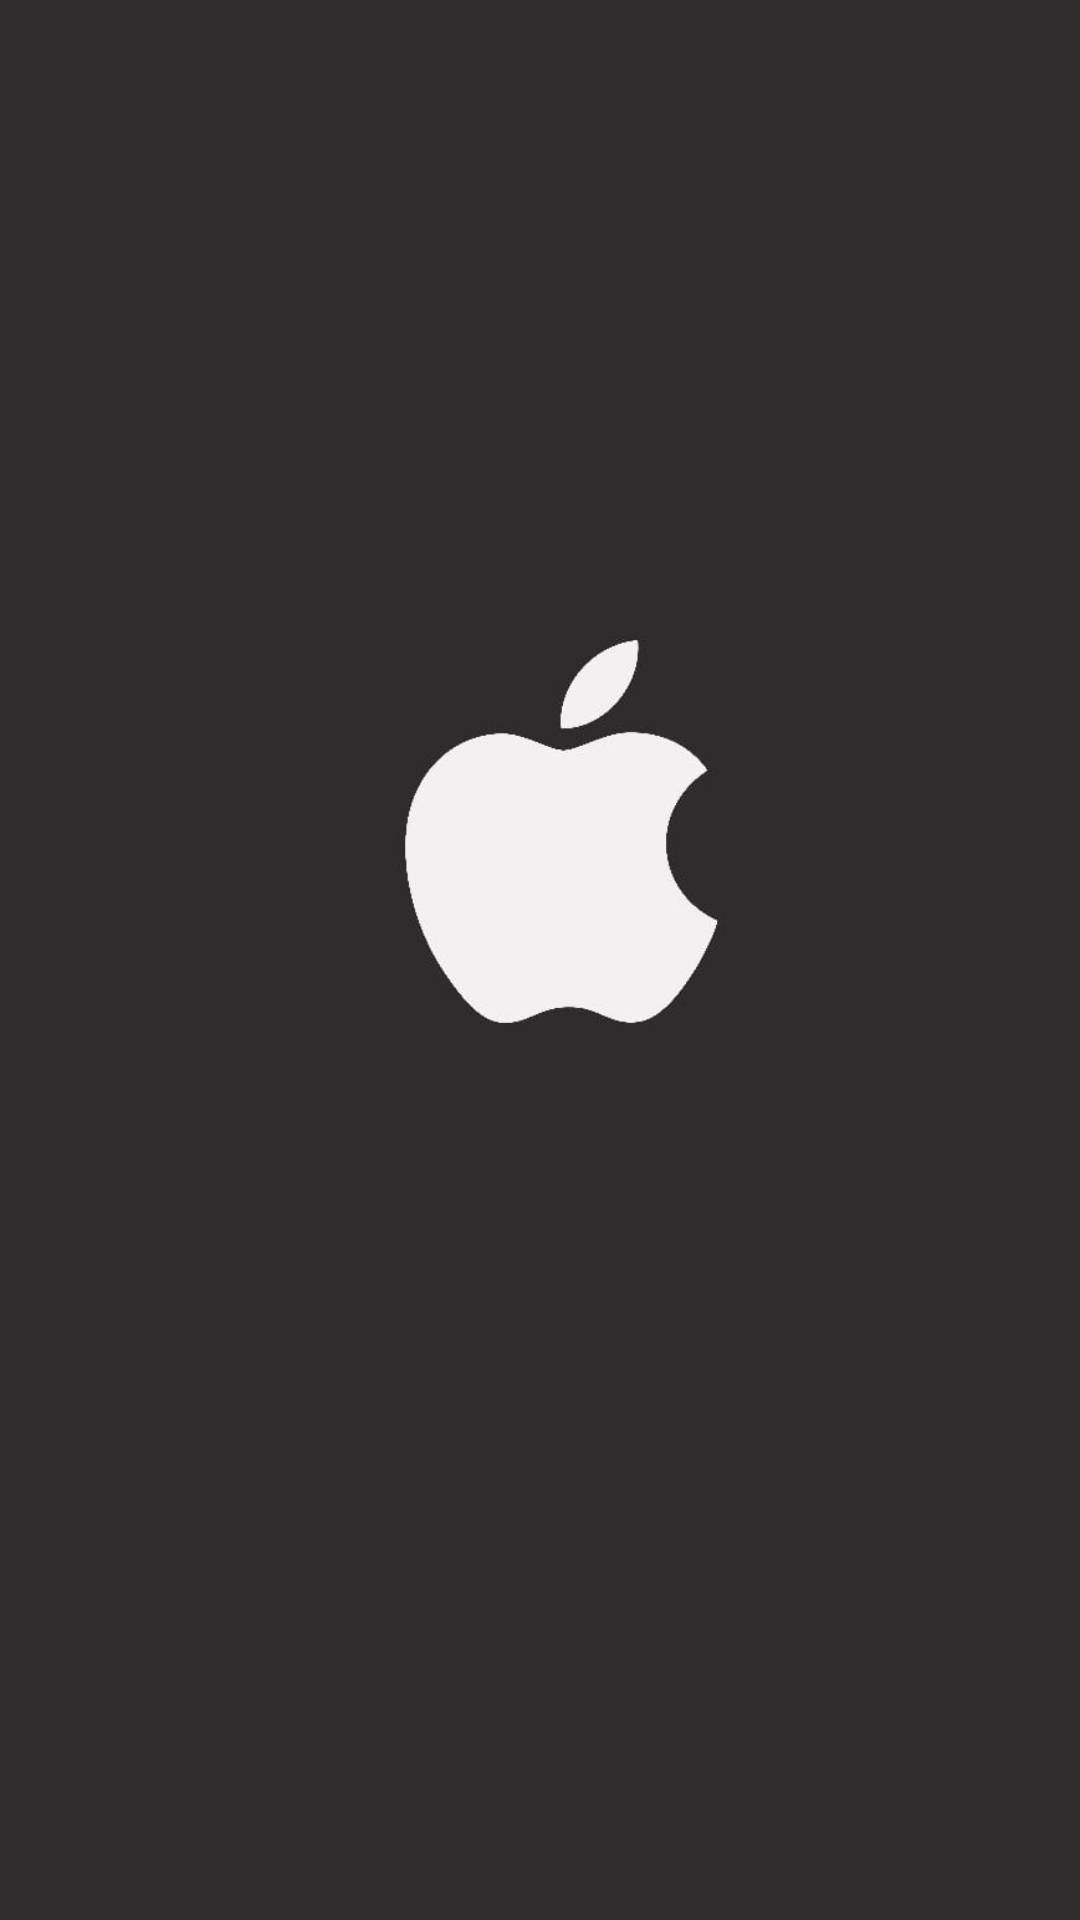 Download Apple Logo Iphone 7 Original Wallpaper 